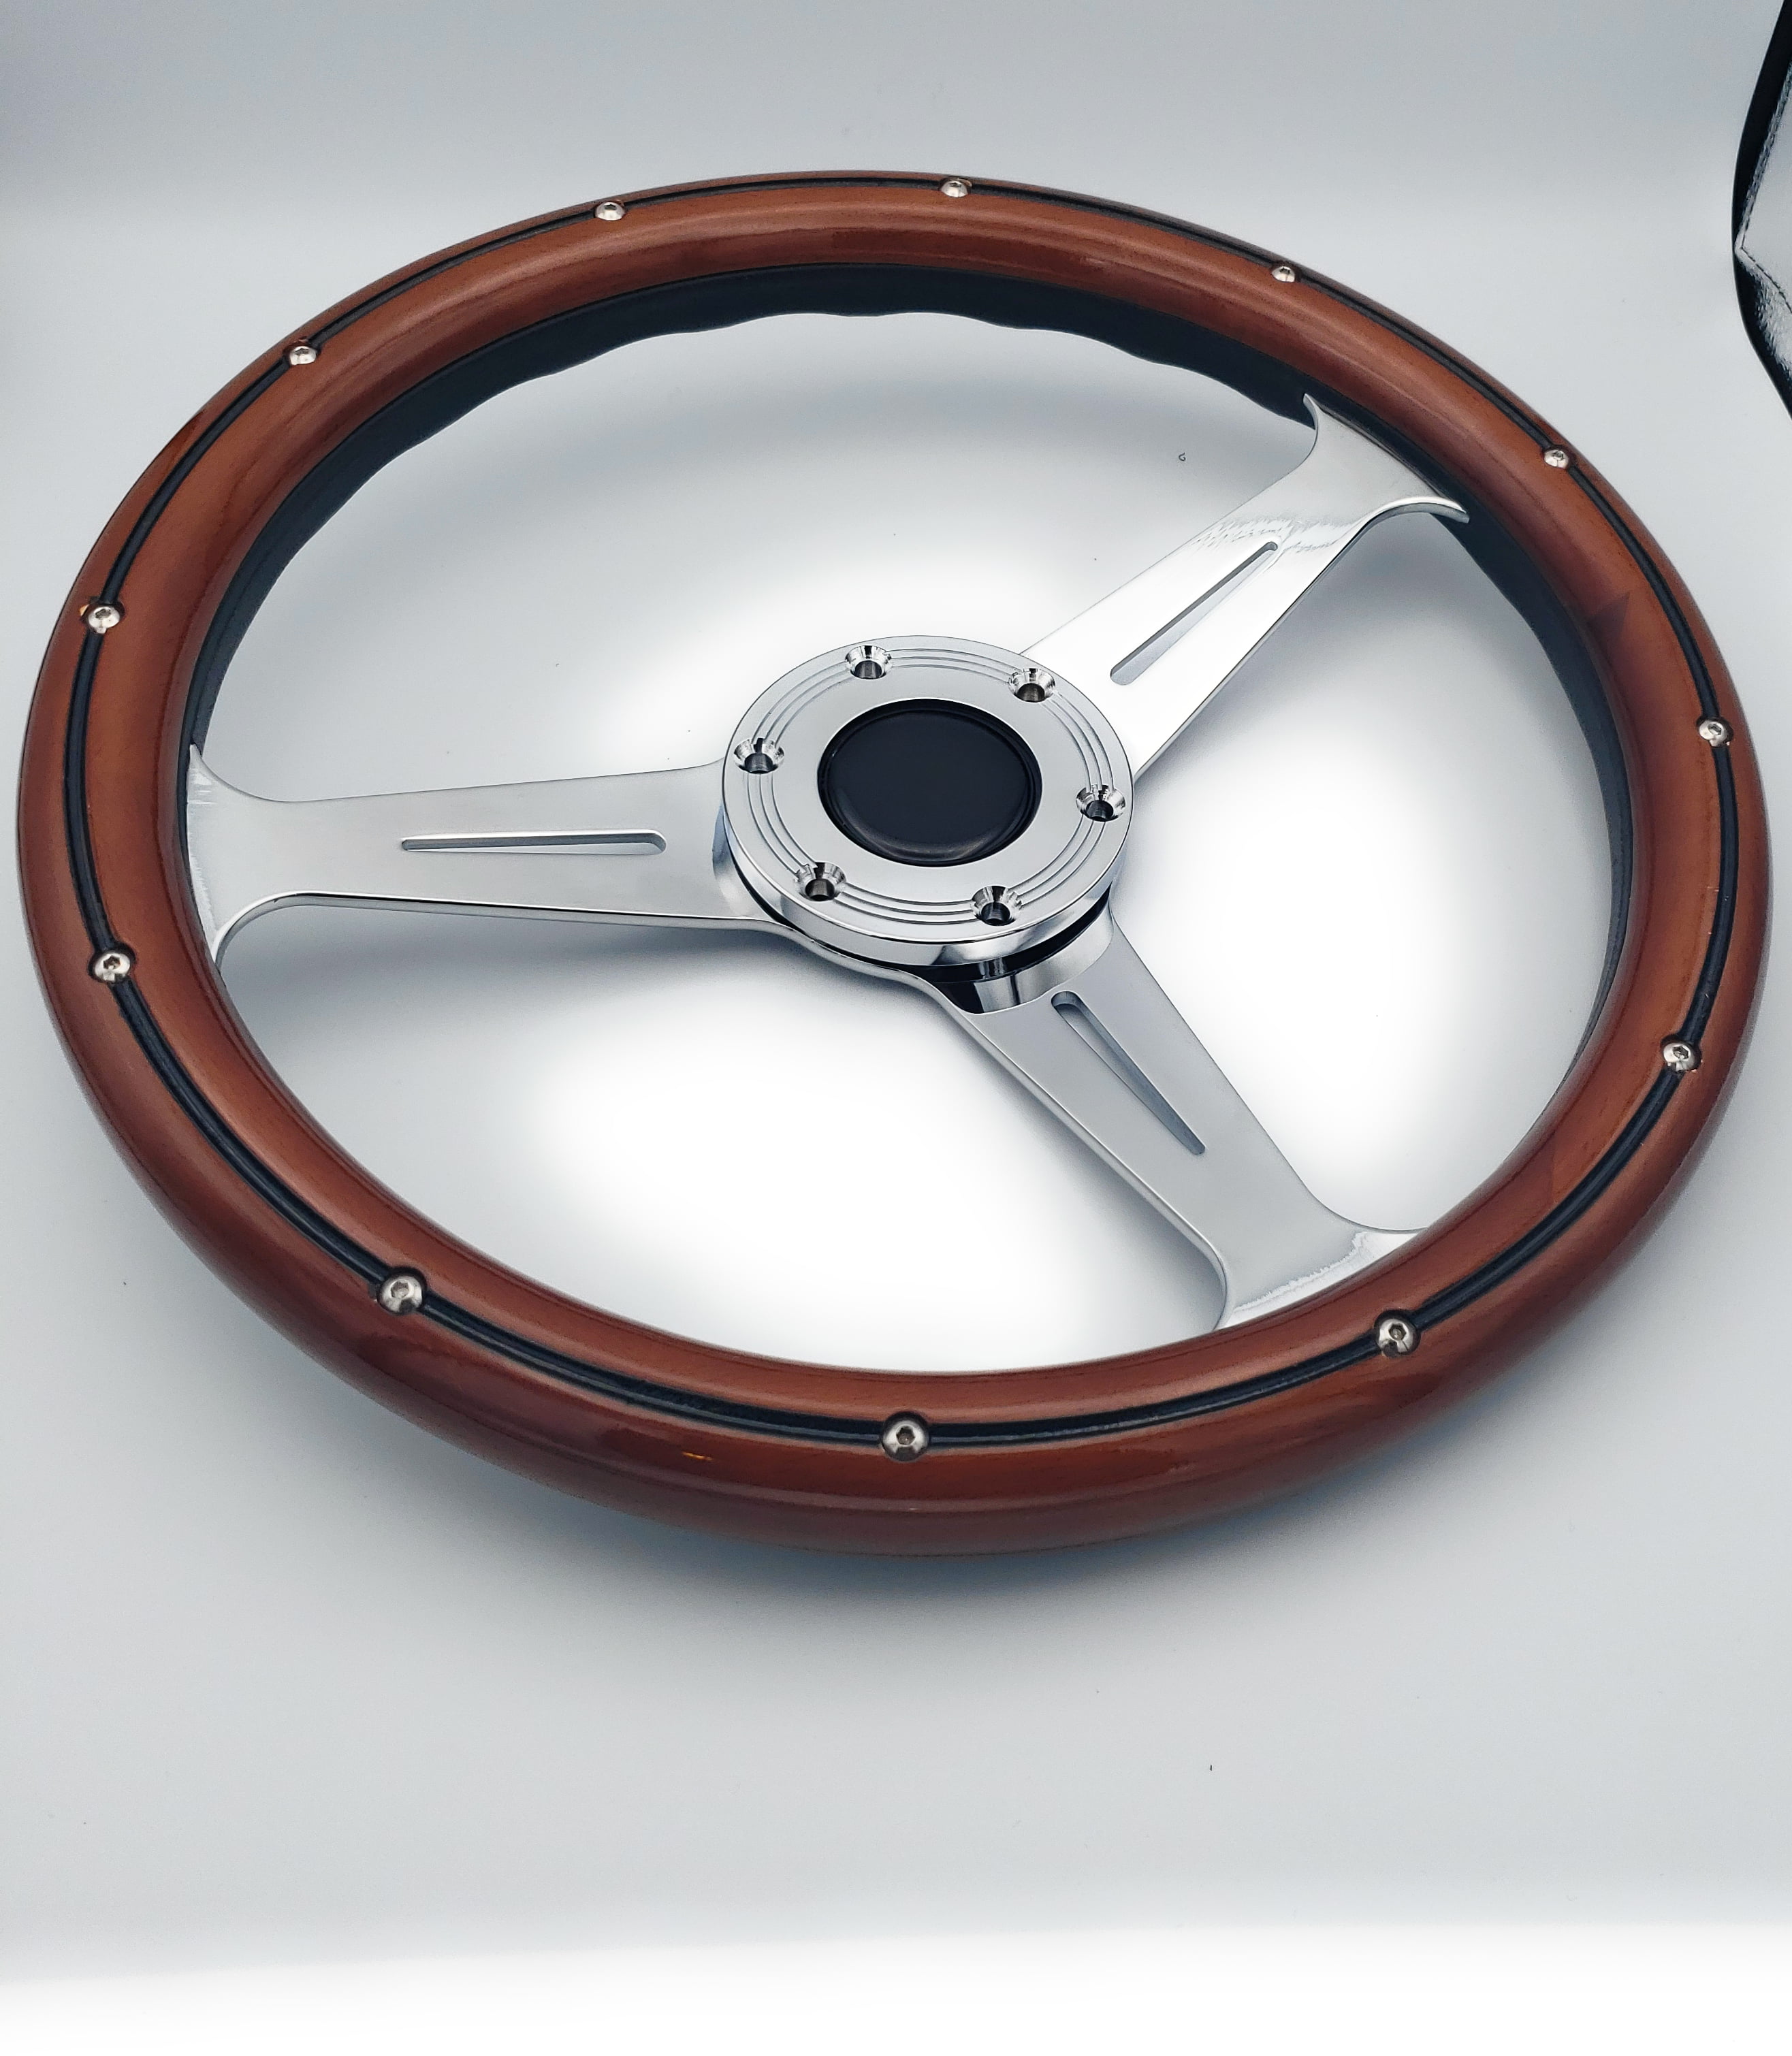 DNA Motoring SW1406 350mm Stainless Steel Spokes Wood Grain Grip Steering Wheel